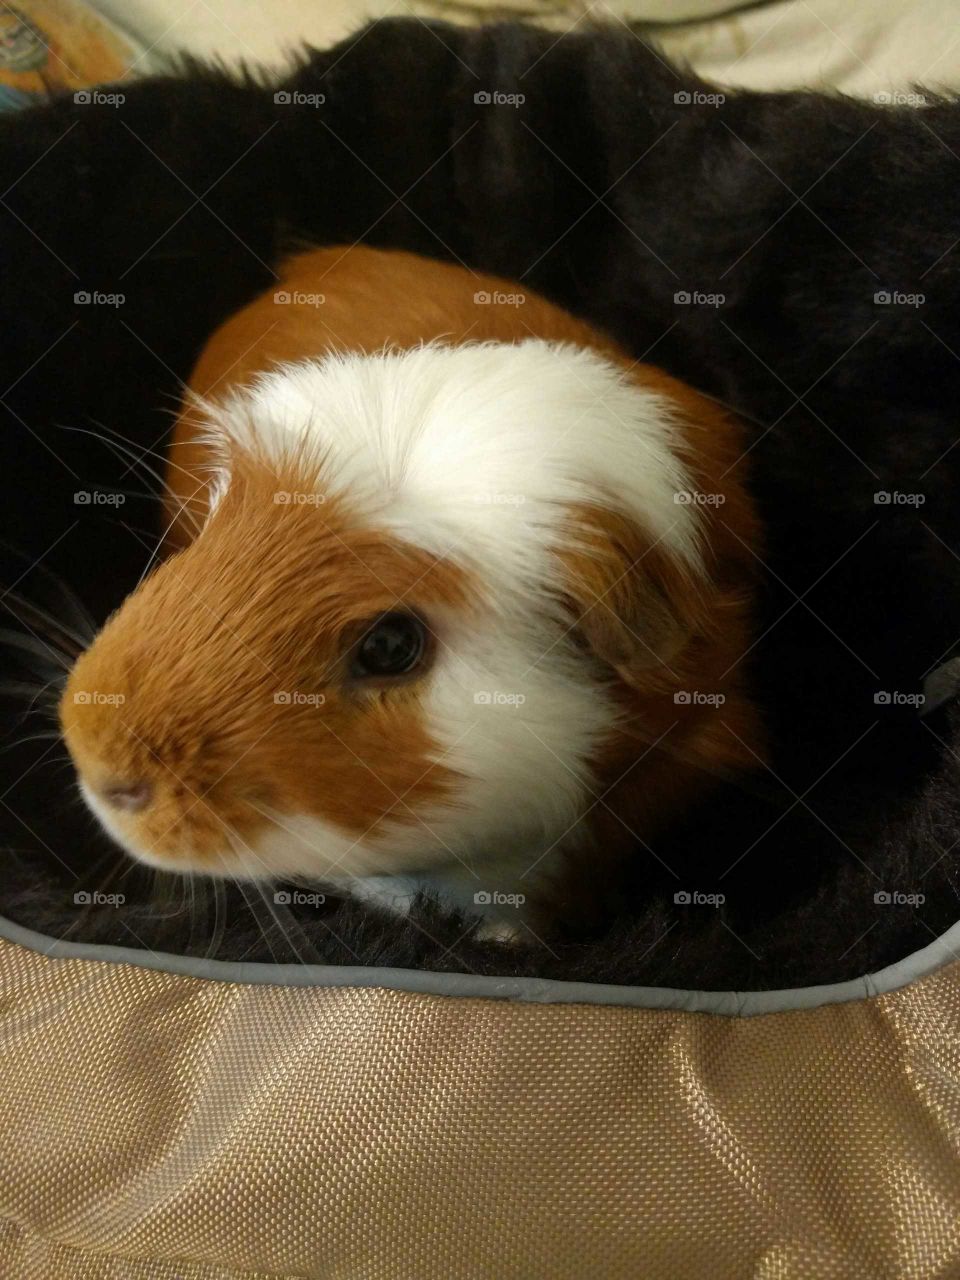 My Guinea Pig buddy being a guinea pig